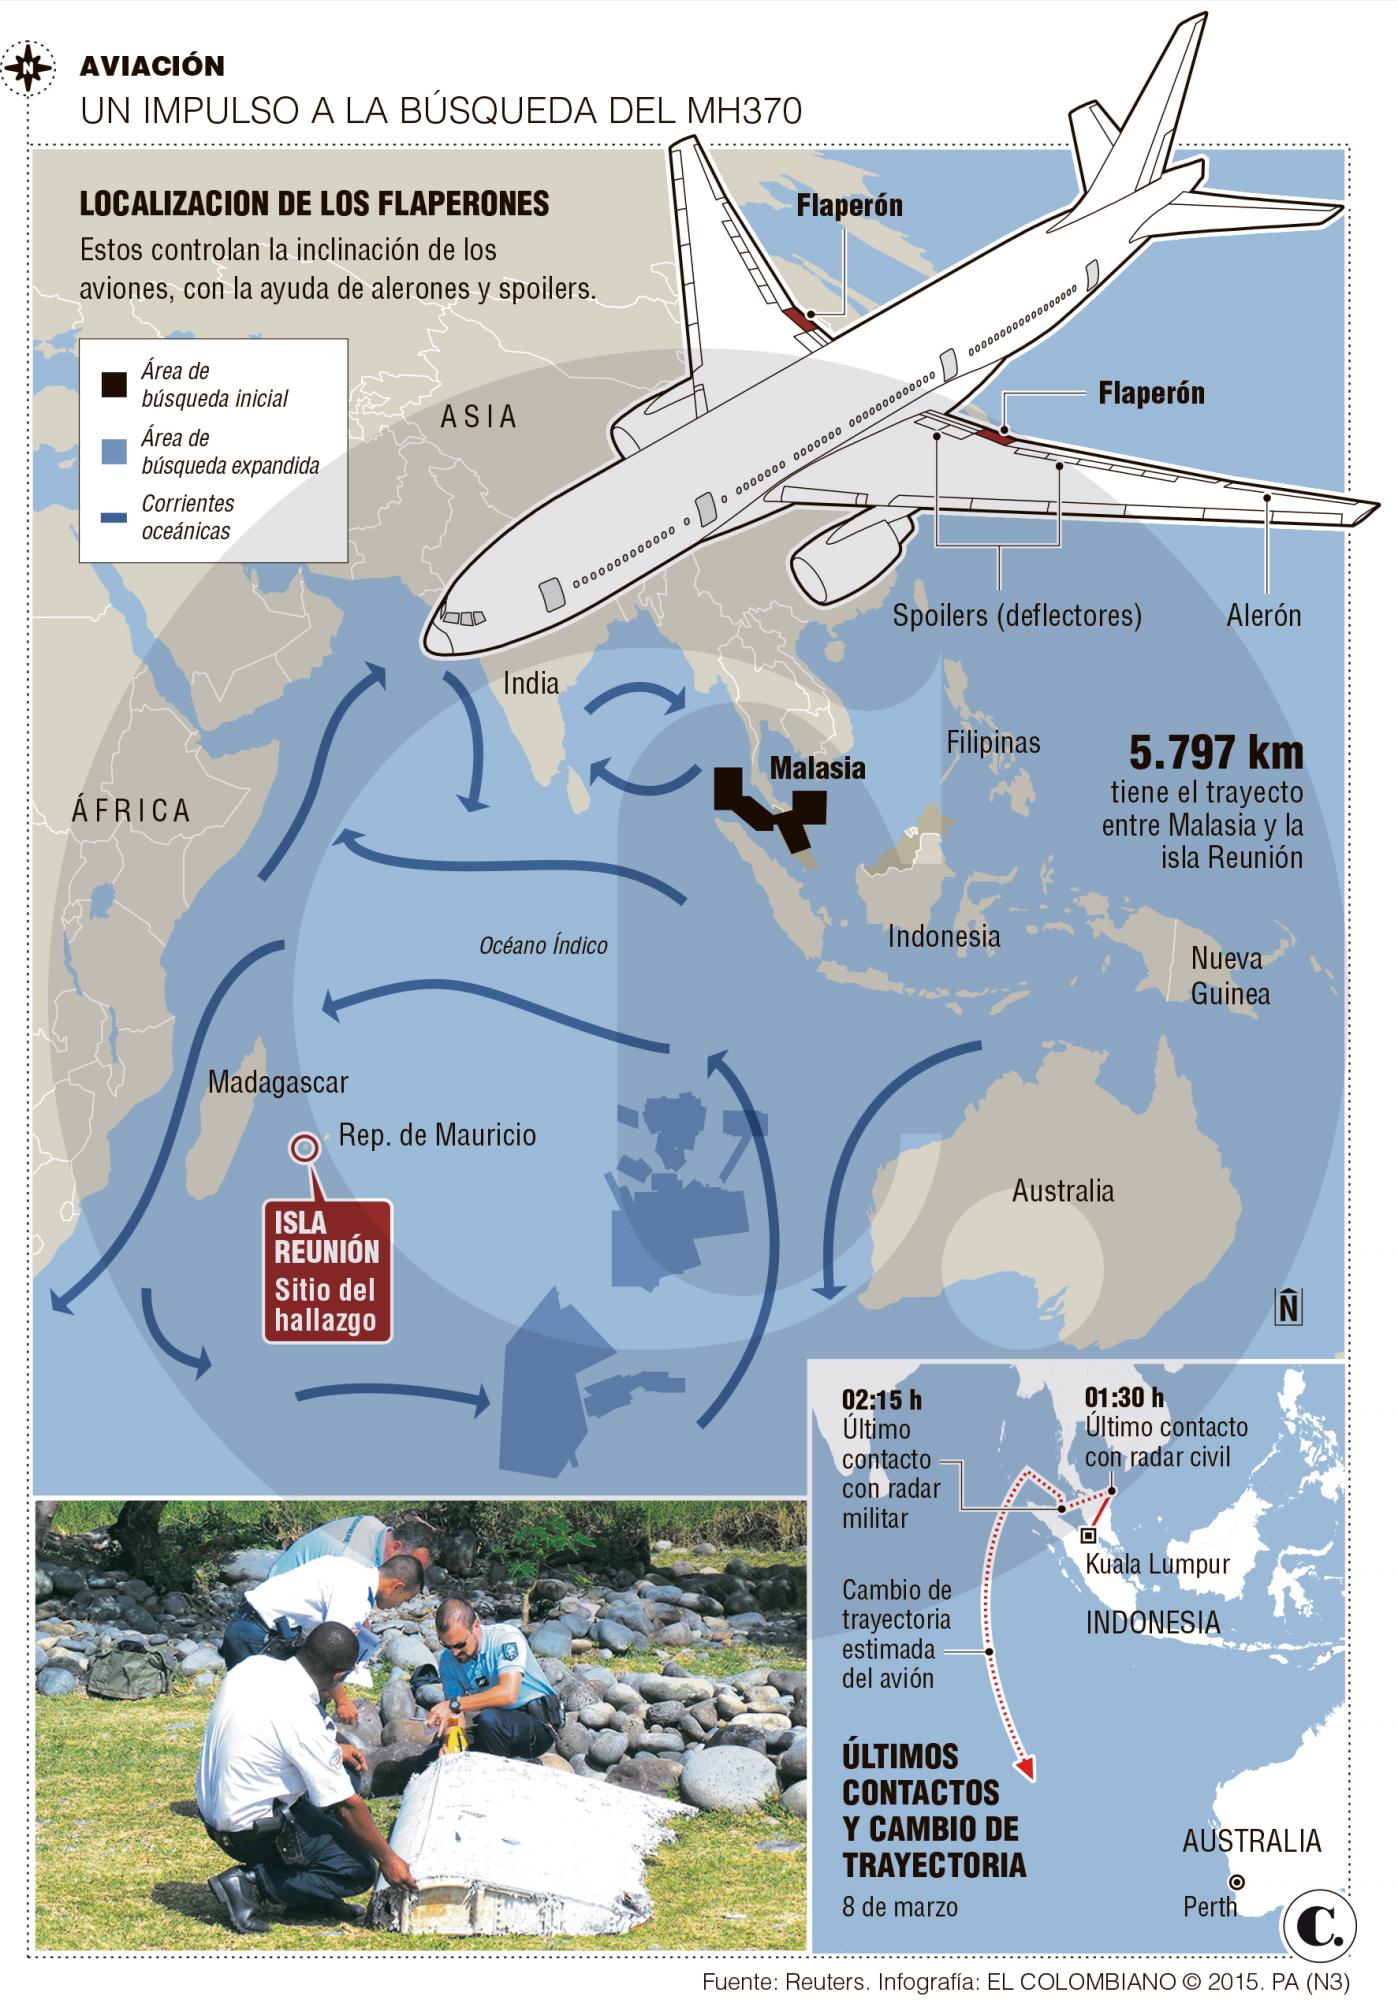 La pieza del MH370, un eslabón hacia la verdad